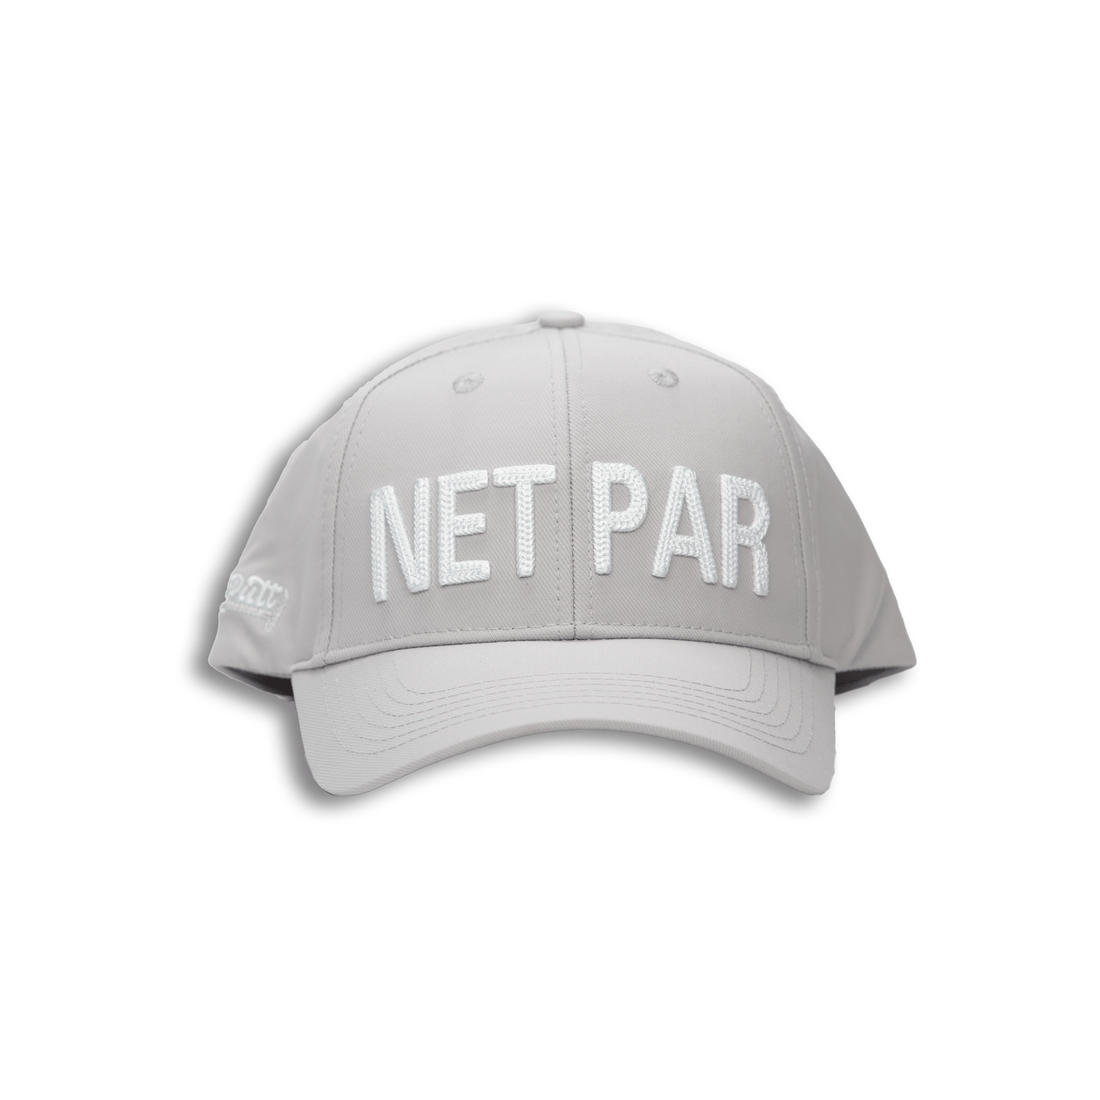 NET PAR Hat - 2putt